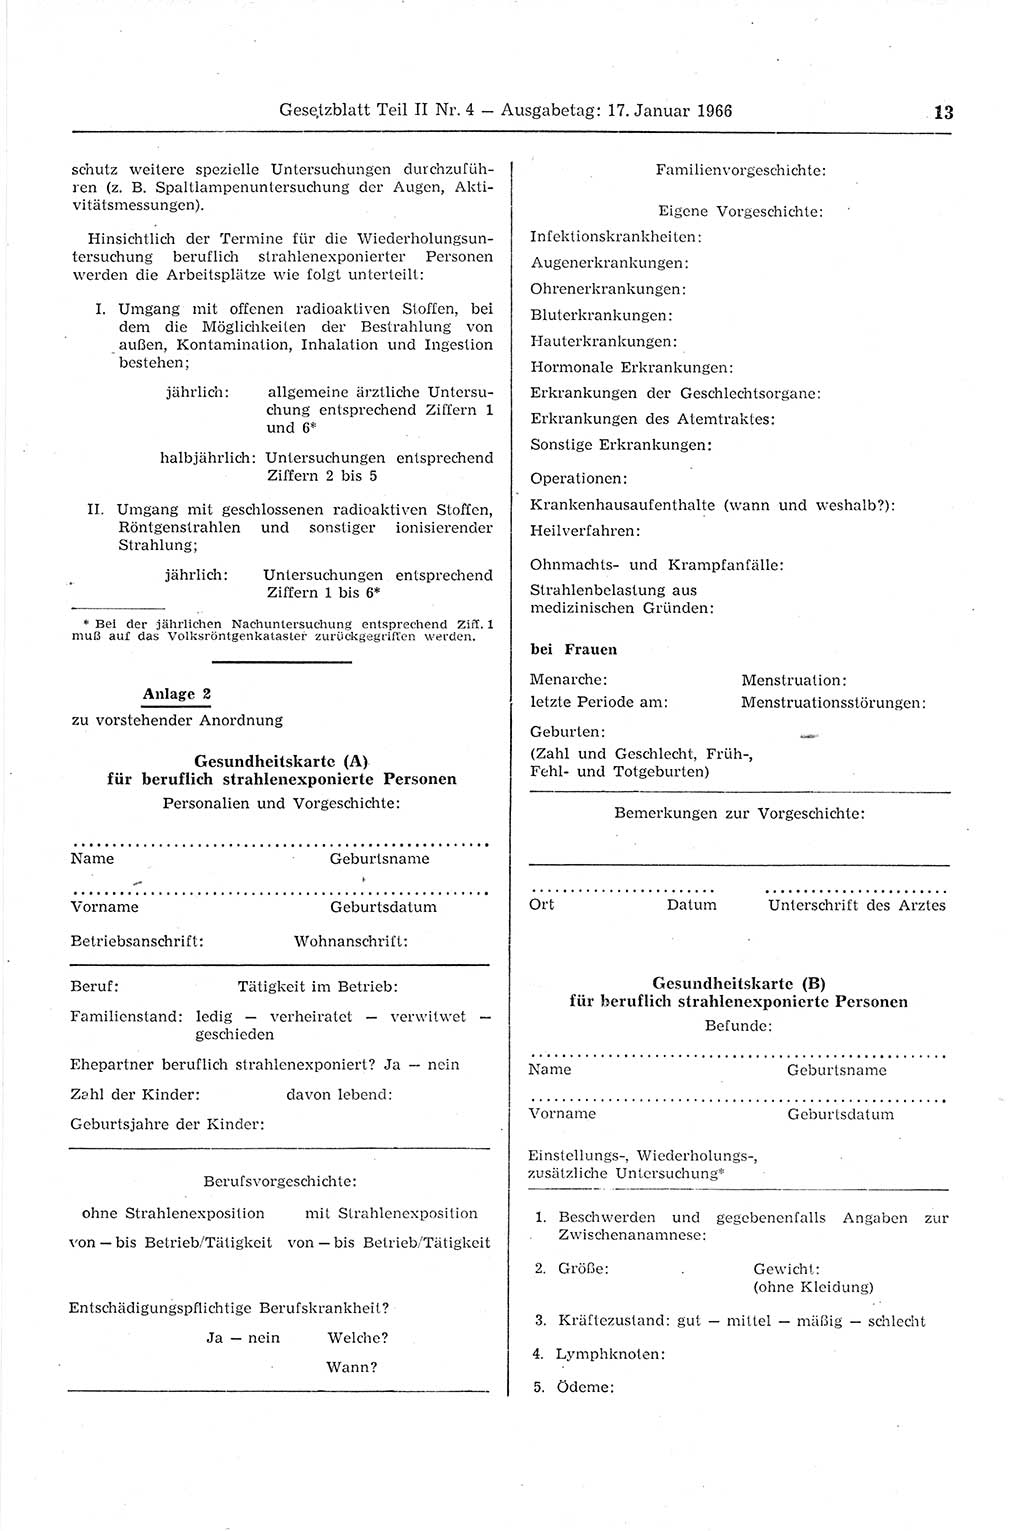 Gesetzblatt (GBl.) der Deutschen Demokratischen Republik (DDR) Teil ⅠⅠ 1966, Seite 13 (GBl. DDR ⅠⅠ 1966, S. 13)